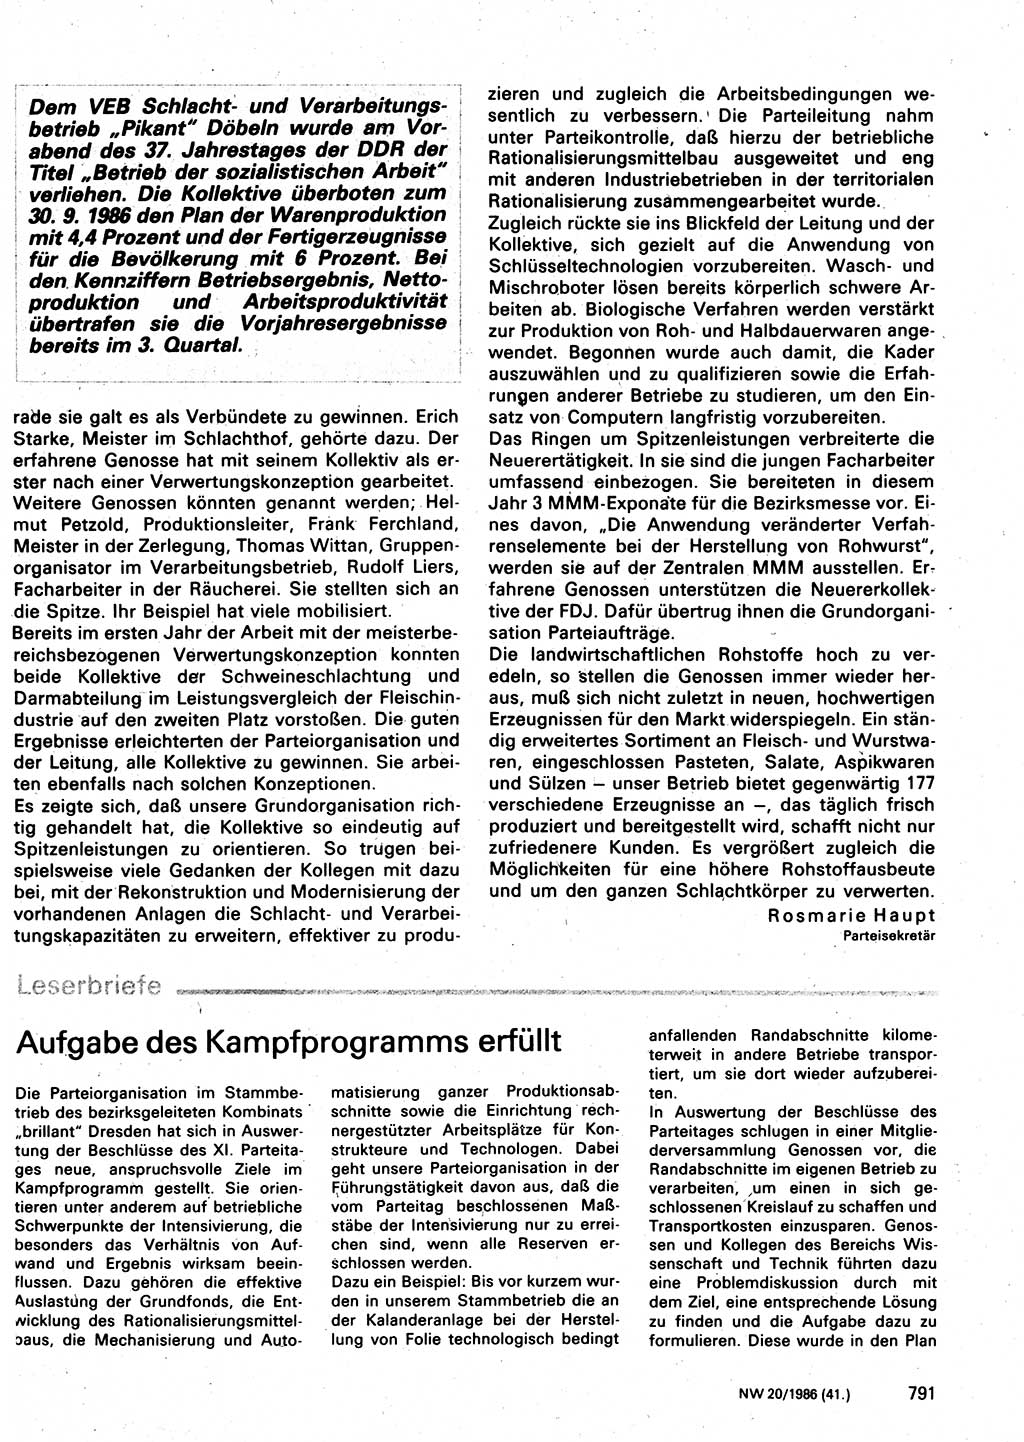 Neuer Weg (NW), Organ des Zentralkomitees (ZK) der SED (Sozialistische Einheitspartei Deutschlands) für Fragen des Parteilebens, 41. Jahrgang [Deutsche Demokratische Republik (DDR)] 1986, Seite 791 (NW ZK SED DDR 1986, S. 791)